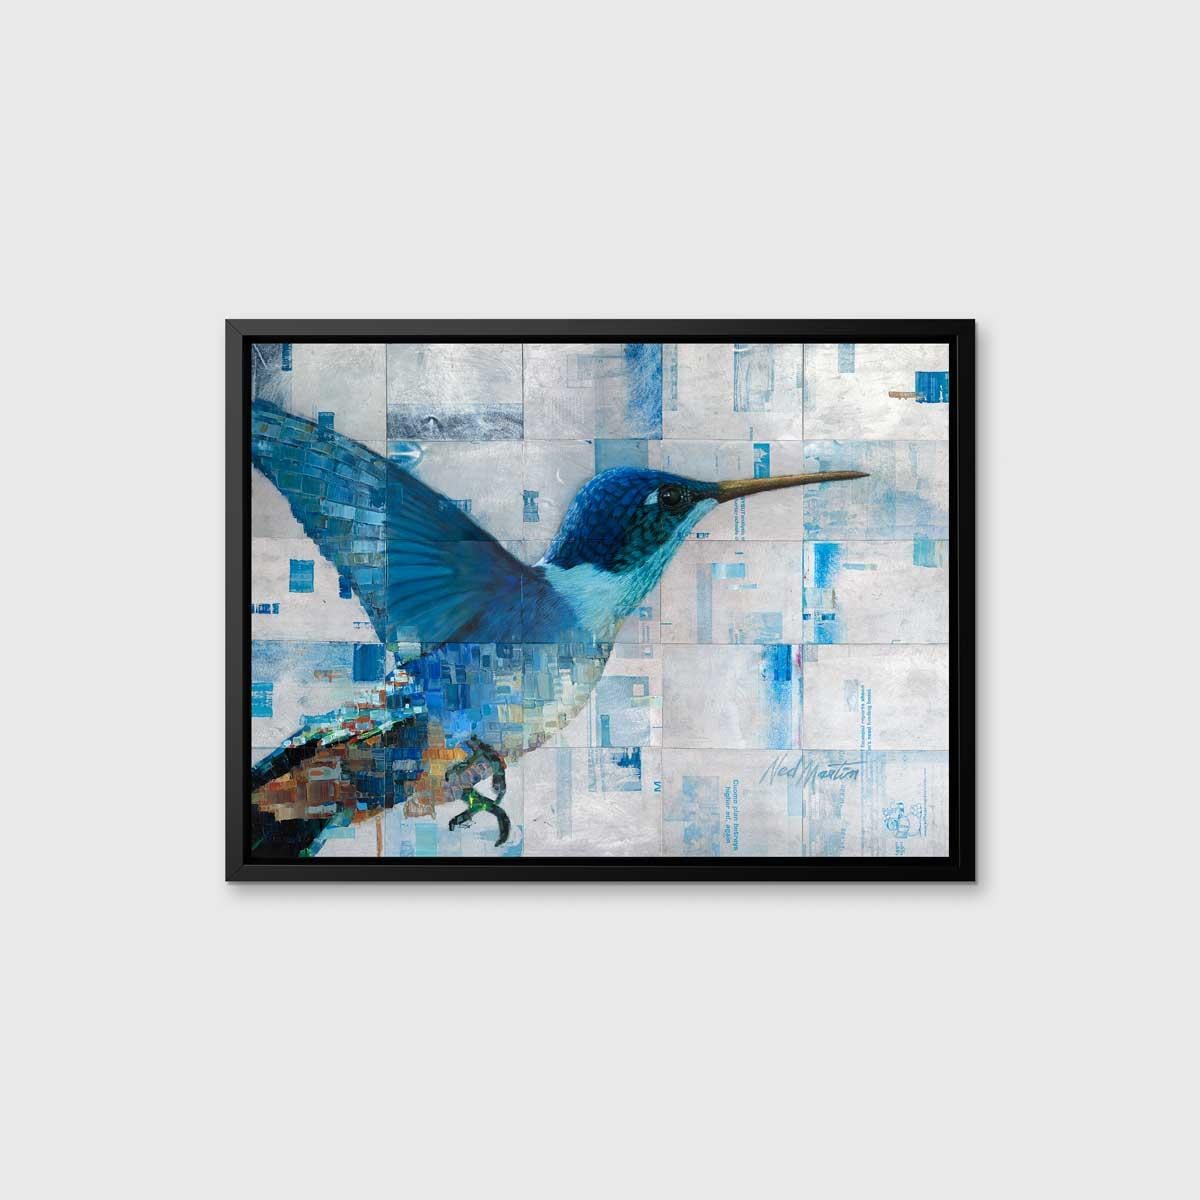 Cette impression abstraite en édition limitée de Ned Martin présente un grand colibri comme point central. Le colibri présente des nuances de bleu et des tons chauds d'orange, tandis qu'un arrière-plan abstrait superpose des carrés argentés et bleus